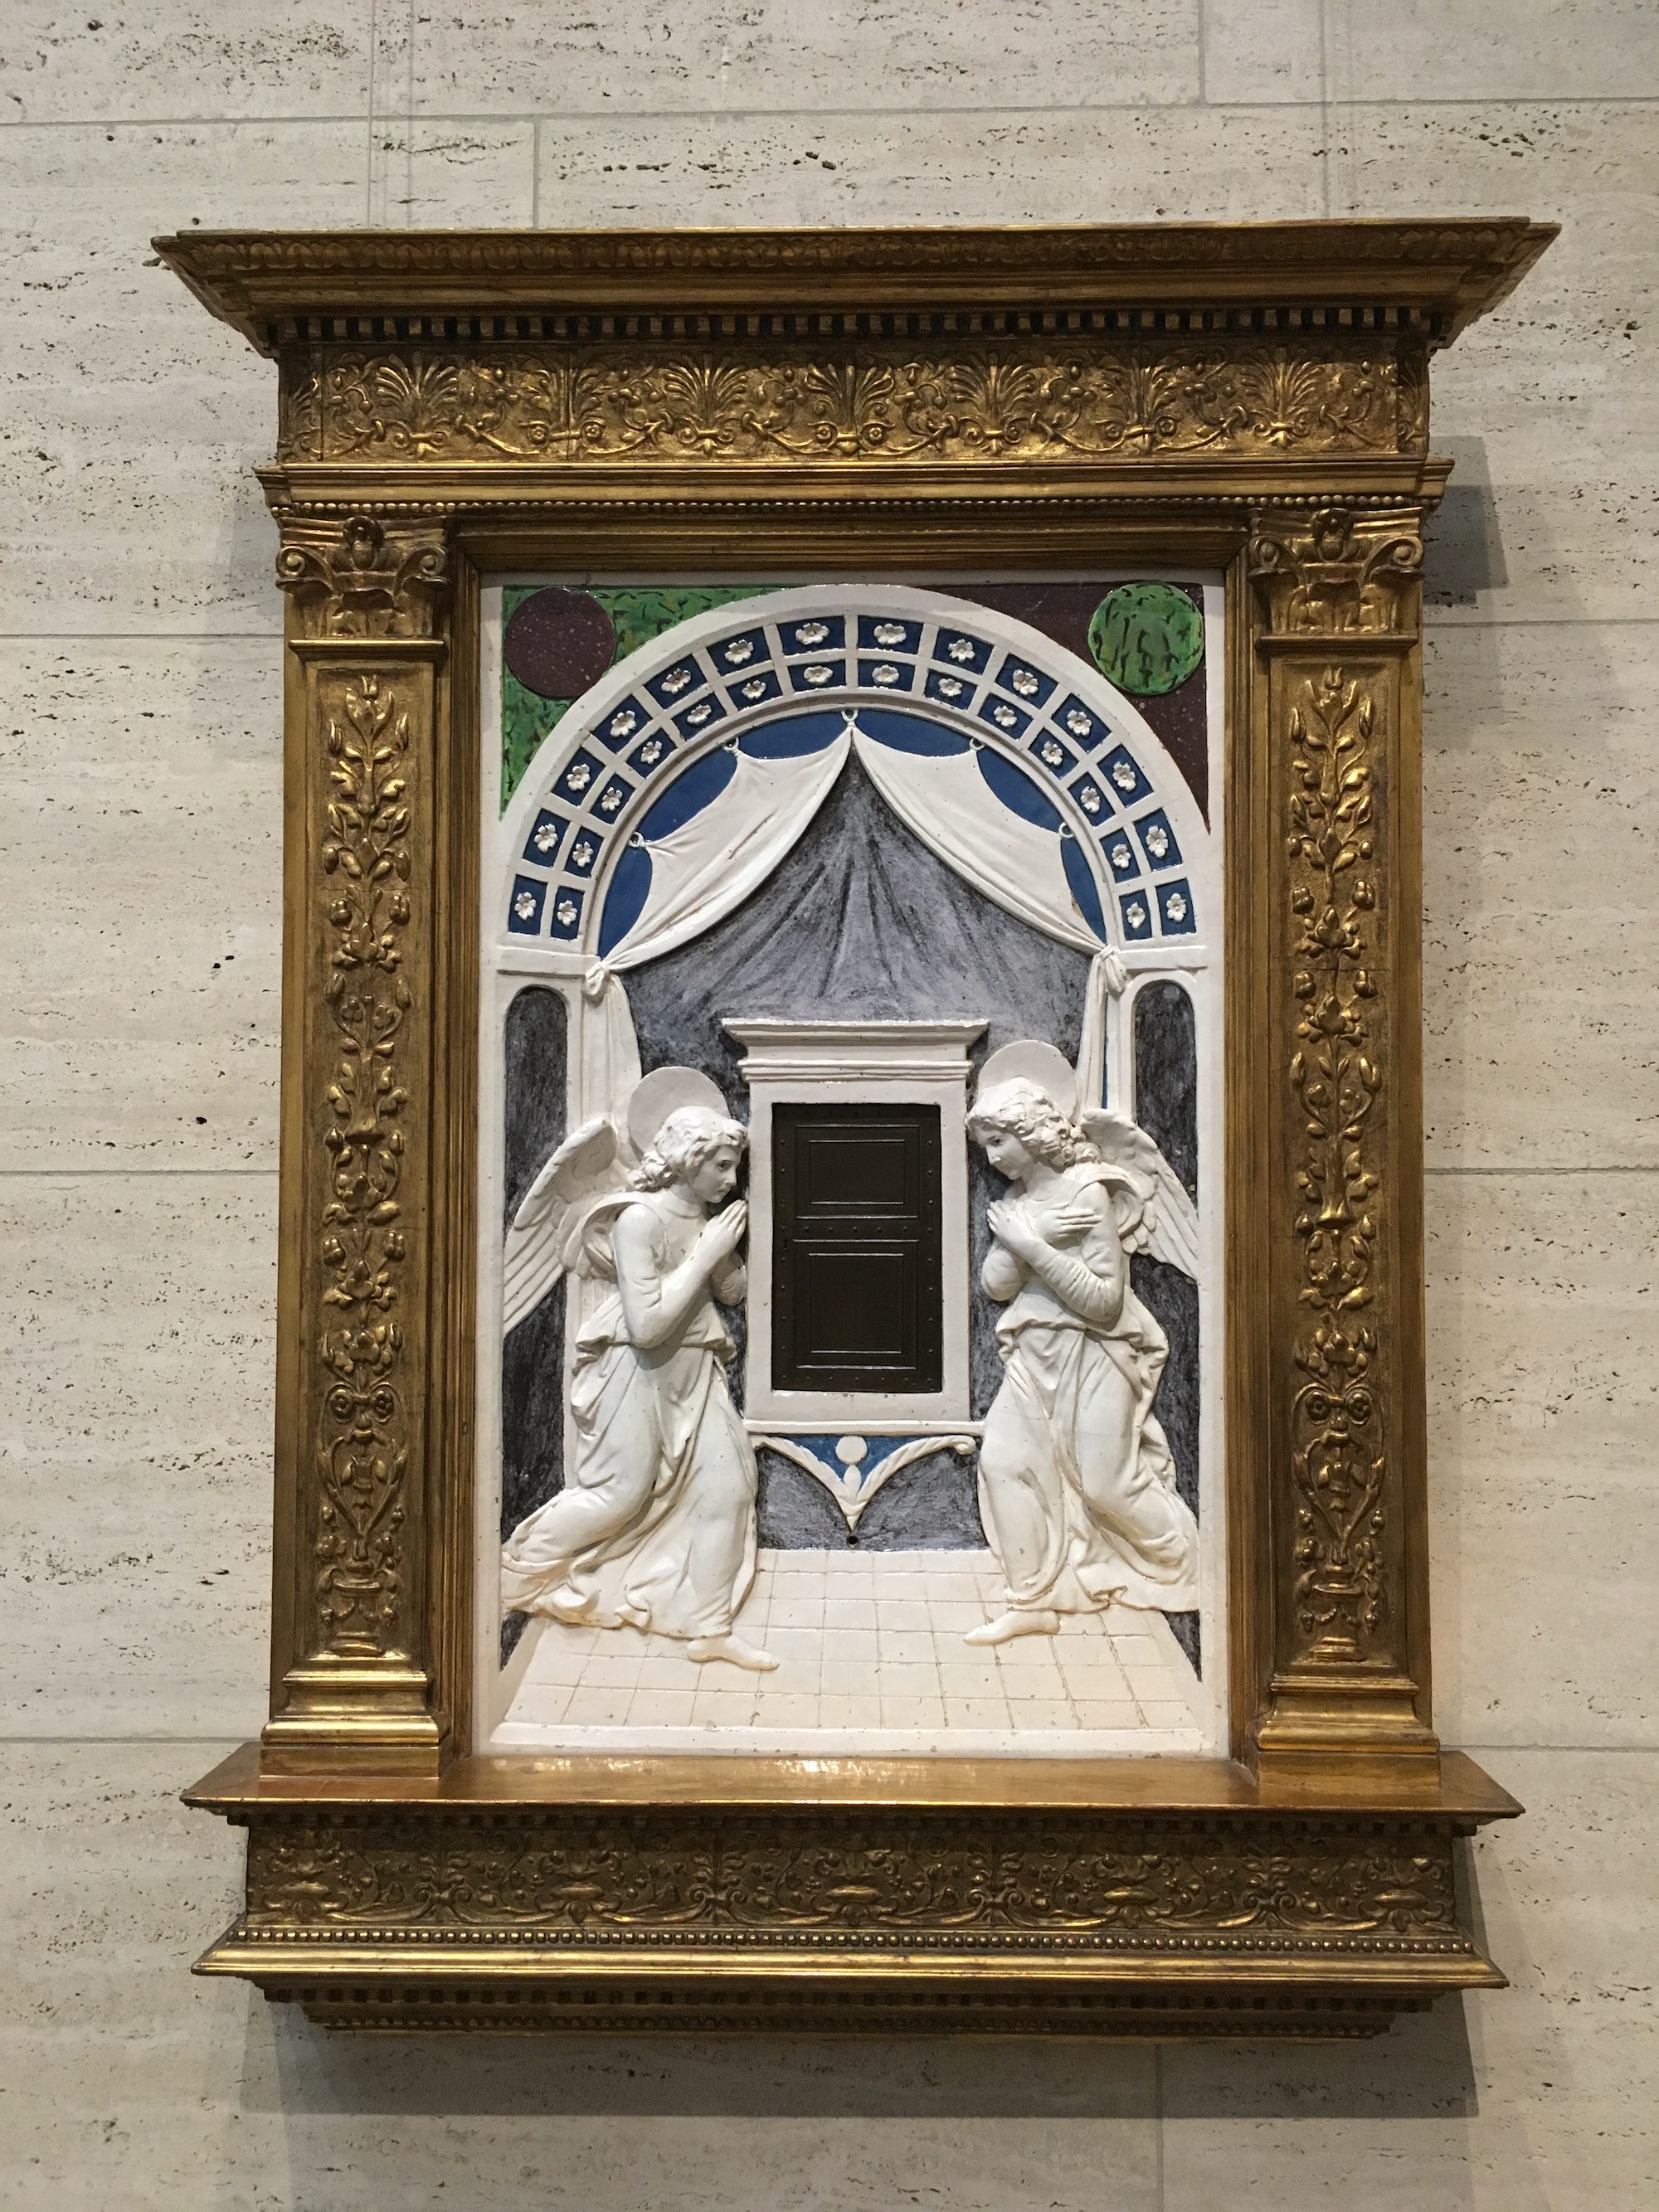 میشکان by Andrea della Robbia - c. 1470 - 76.2 cm 